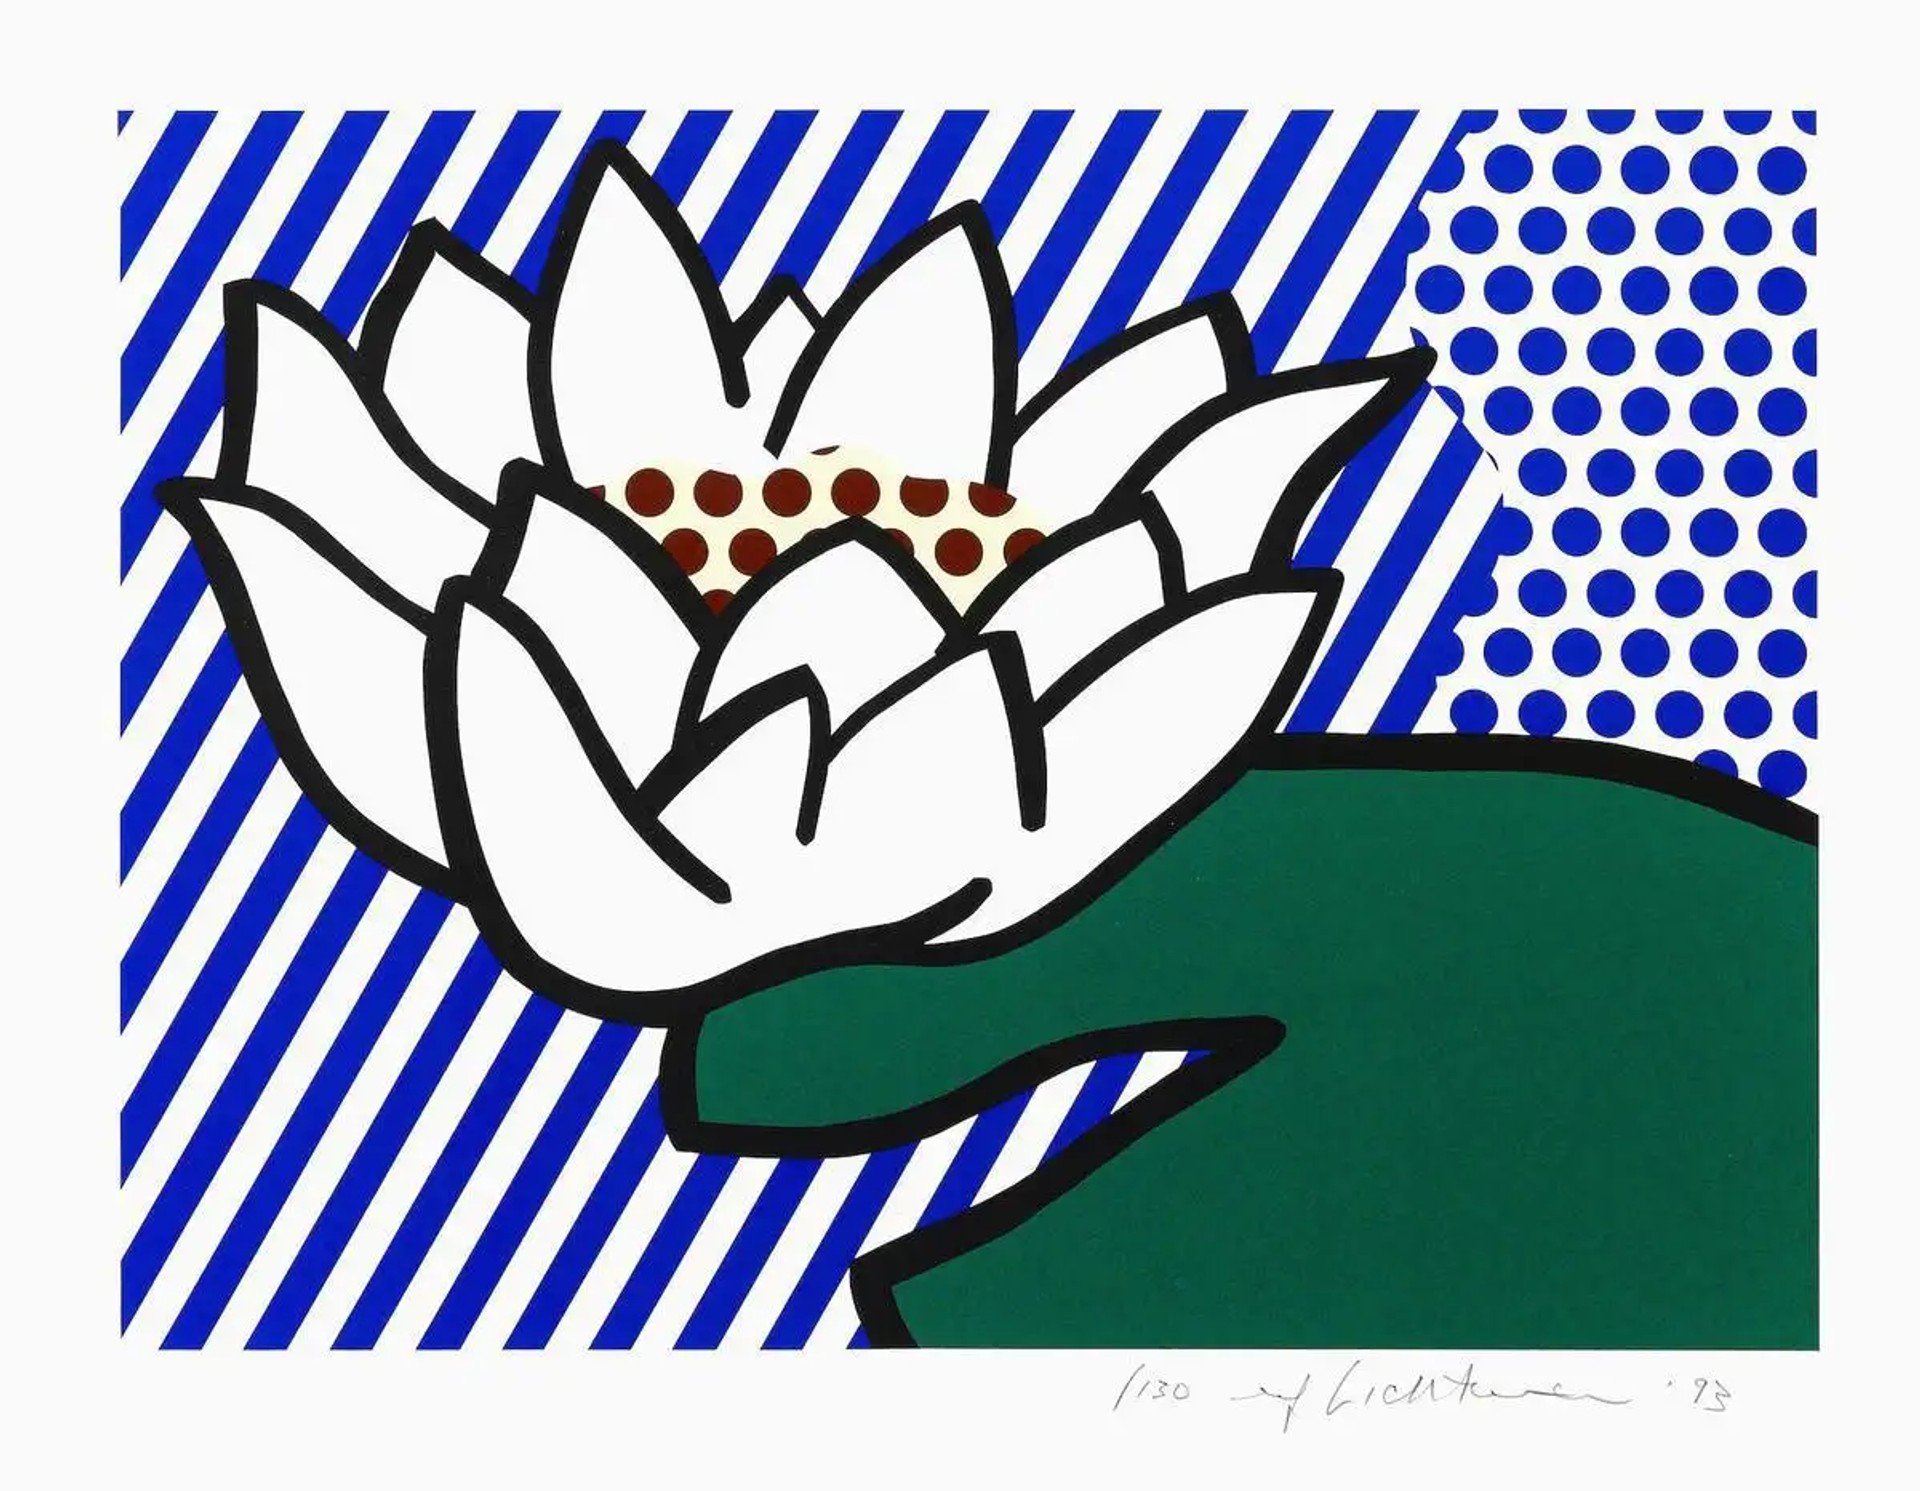 10 Facts About Roy Lichtenstein's Water Lilies